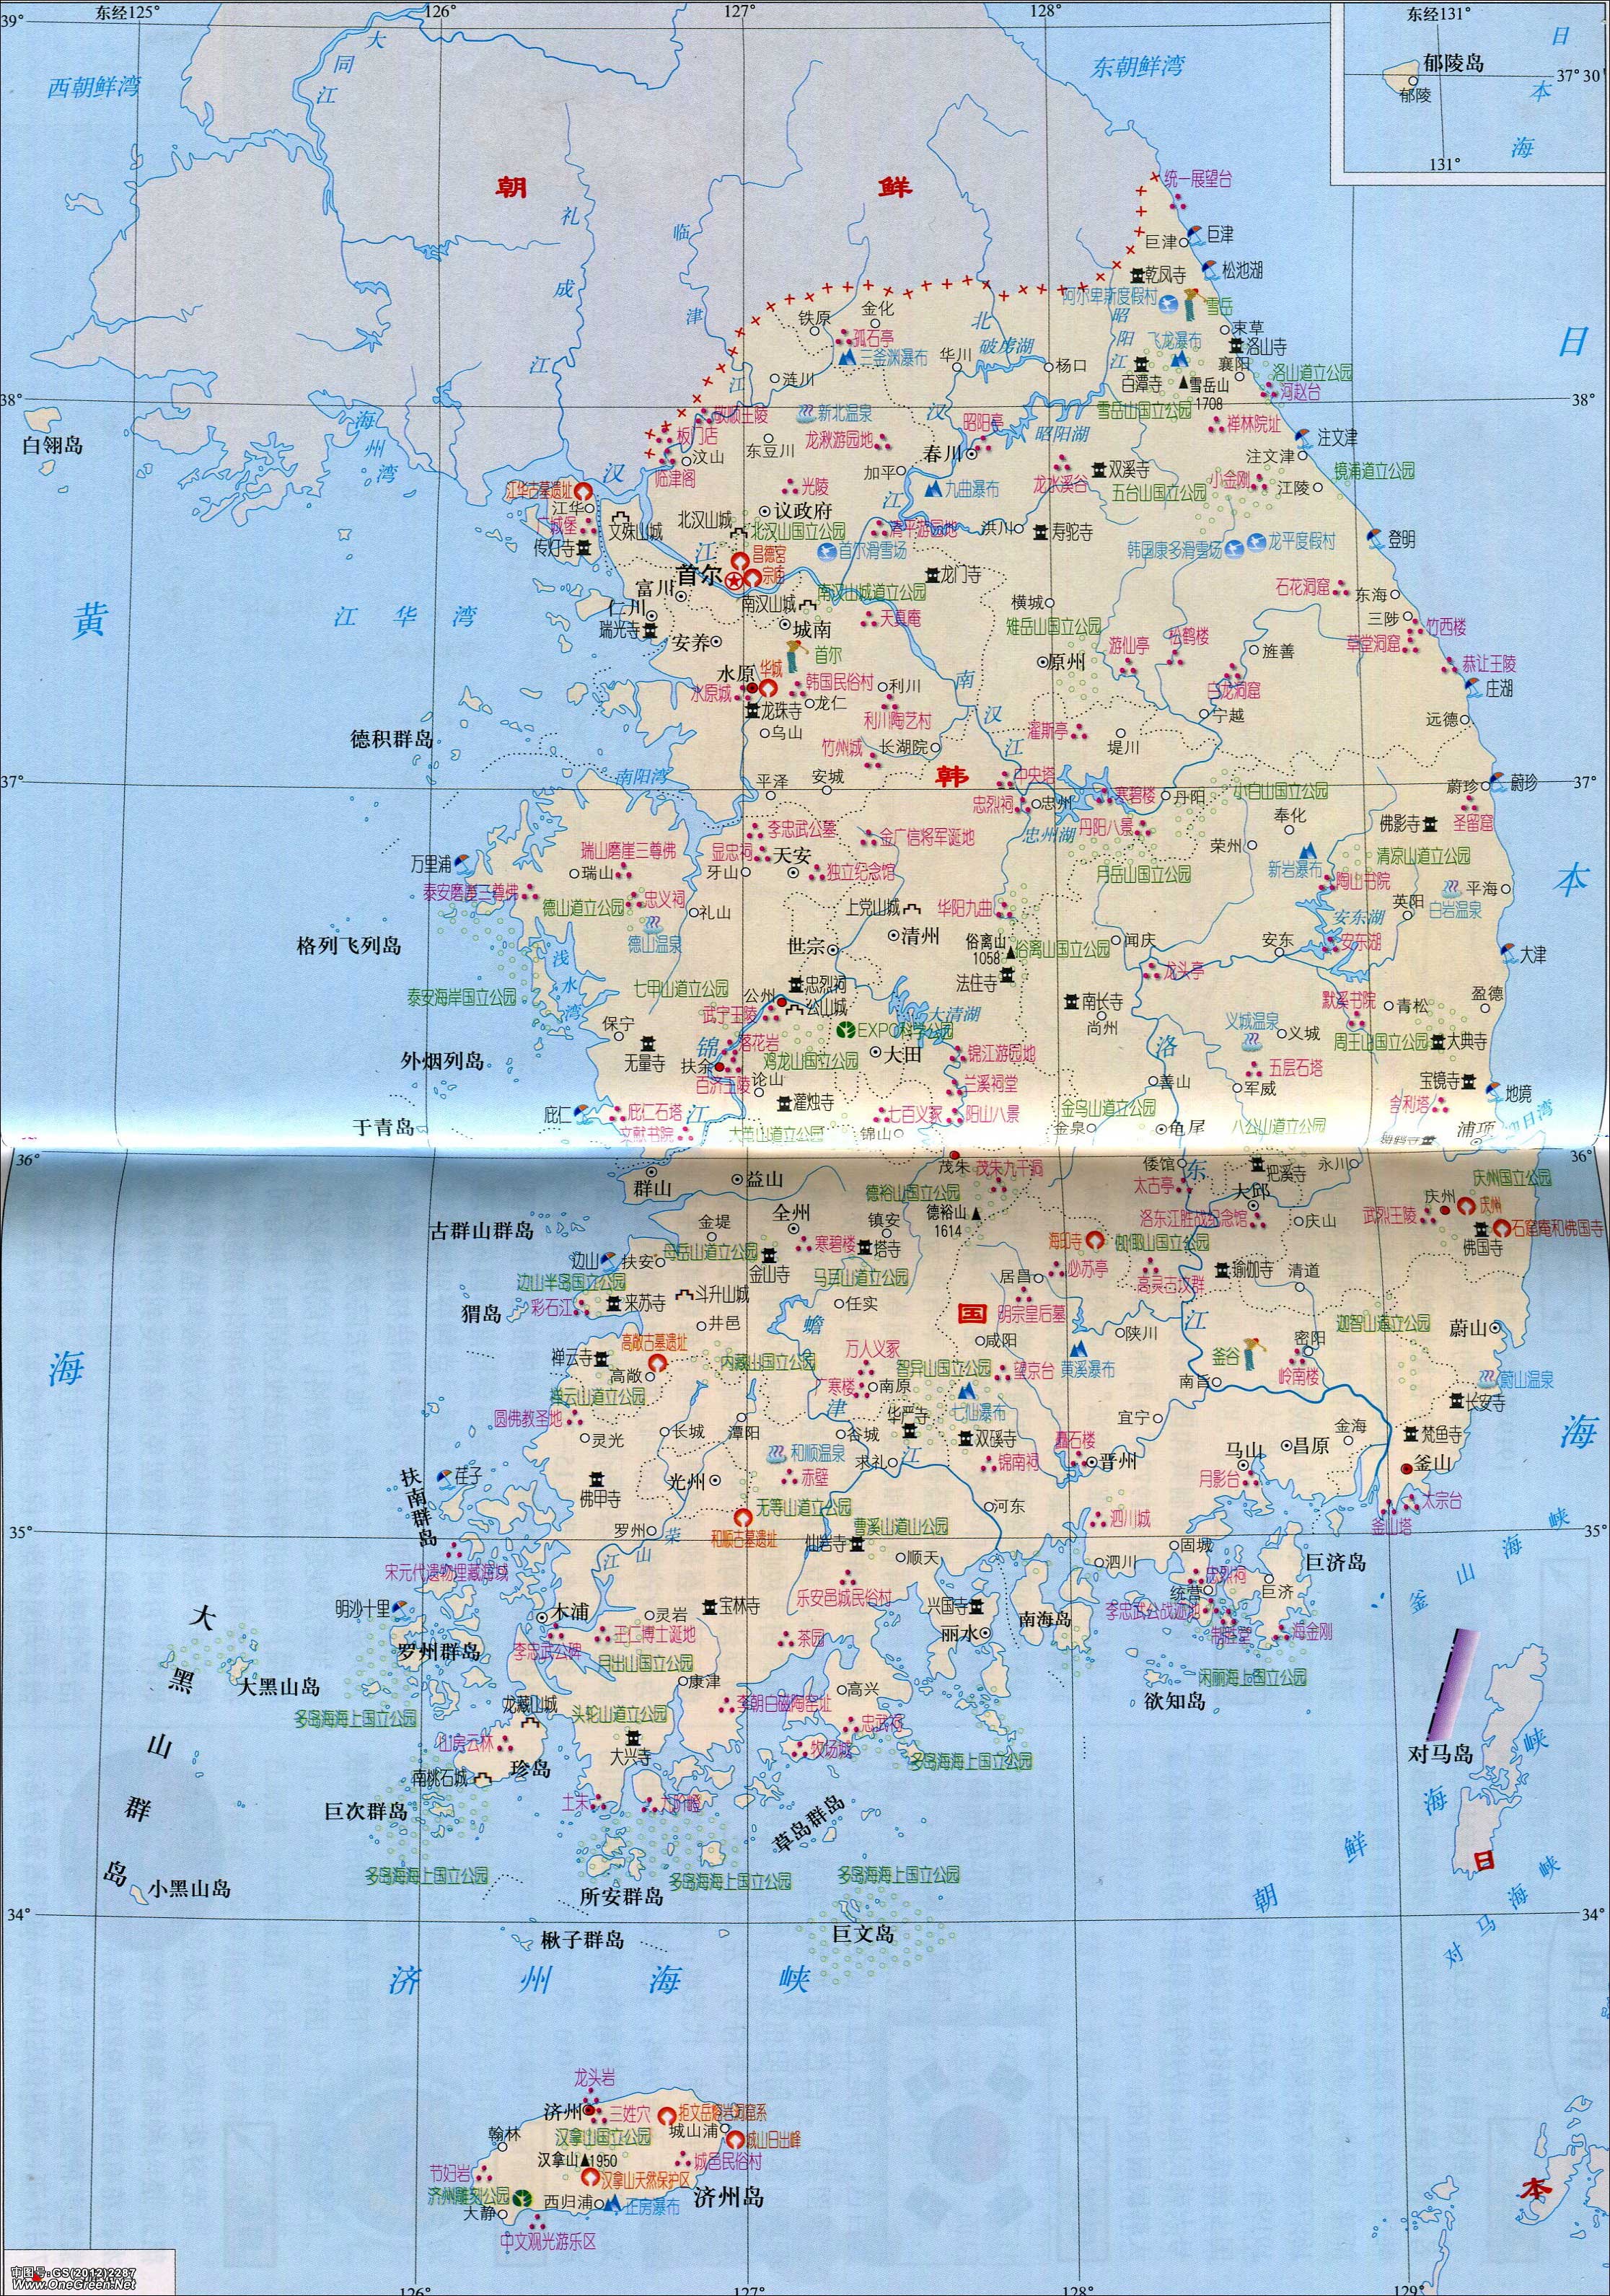 韩国旅游地图